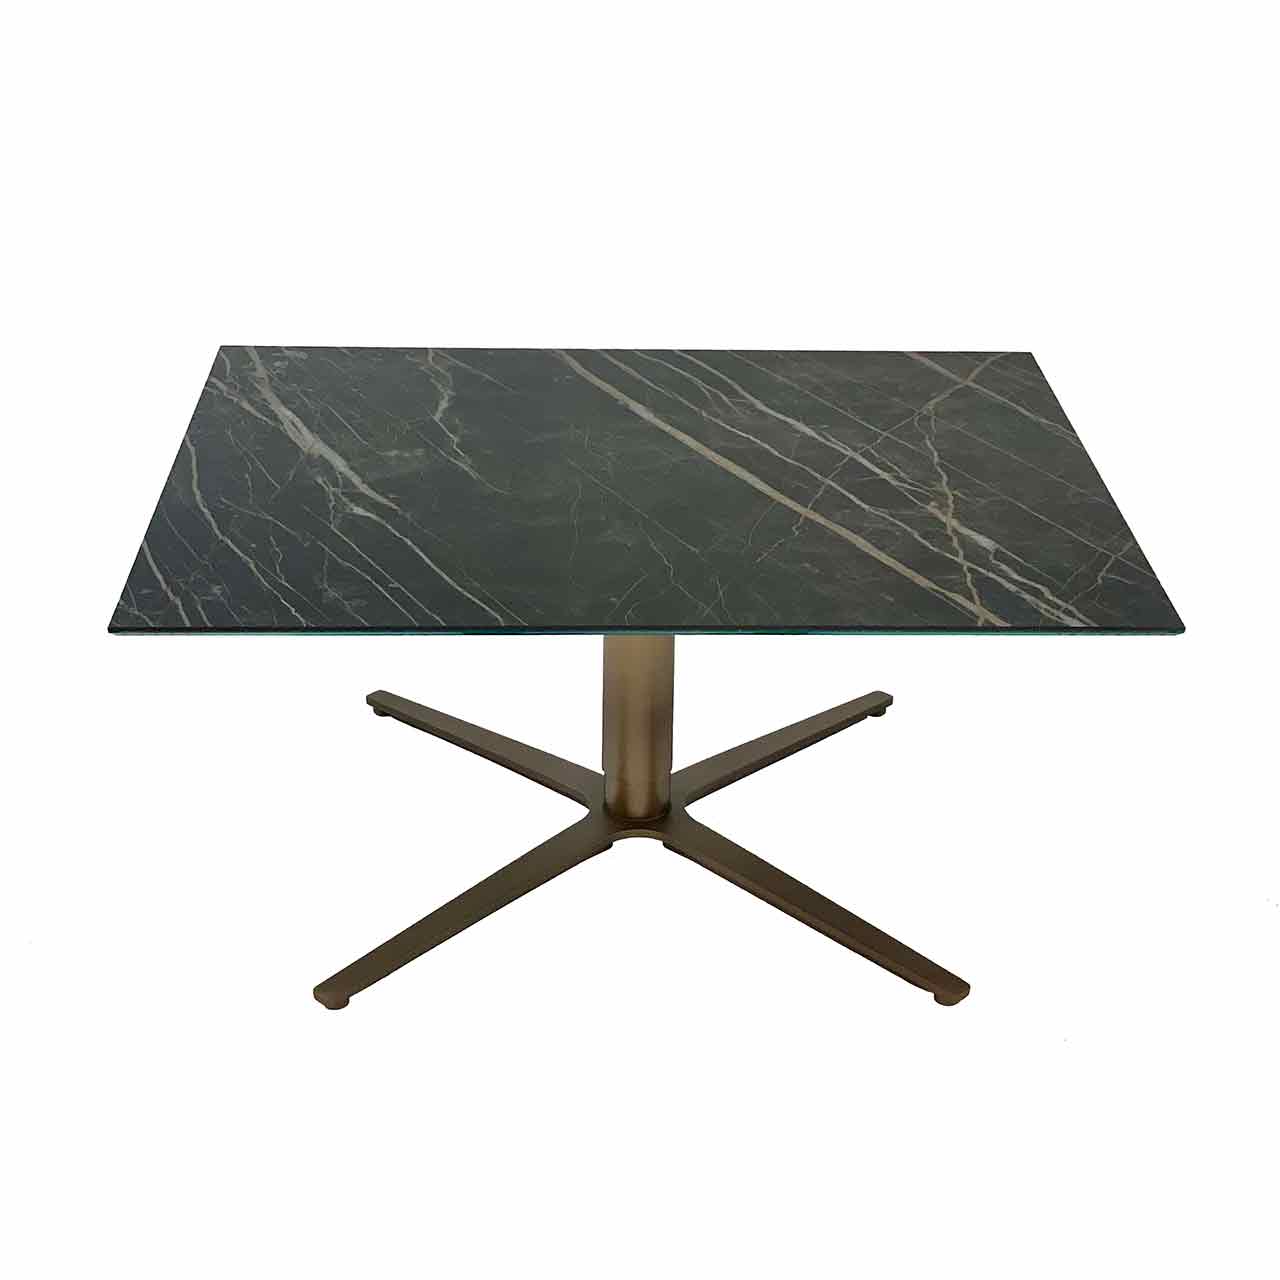 Ronald Schmitt – Fixus P 590 | Tischplatte Keramik Noir Desire, Säule und Sternfuß Bronze lackiert